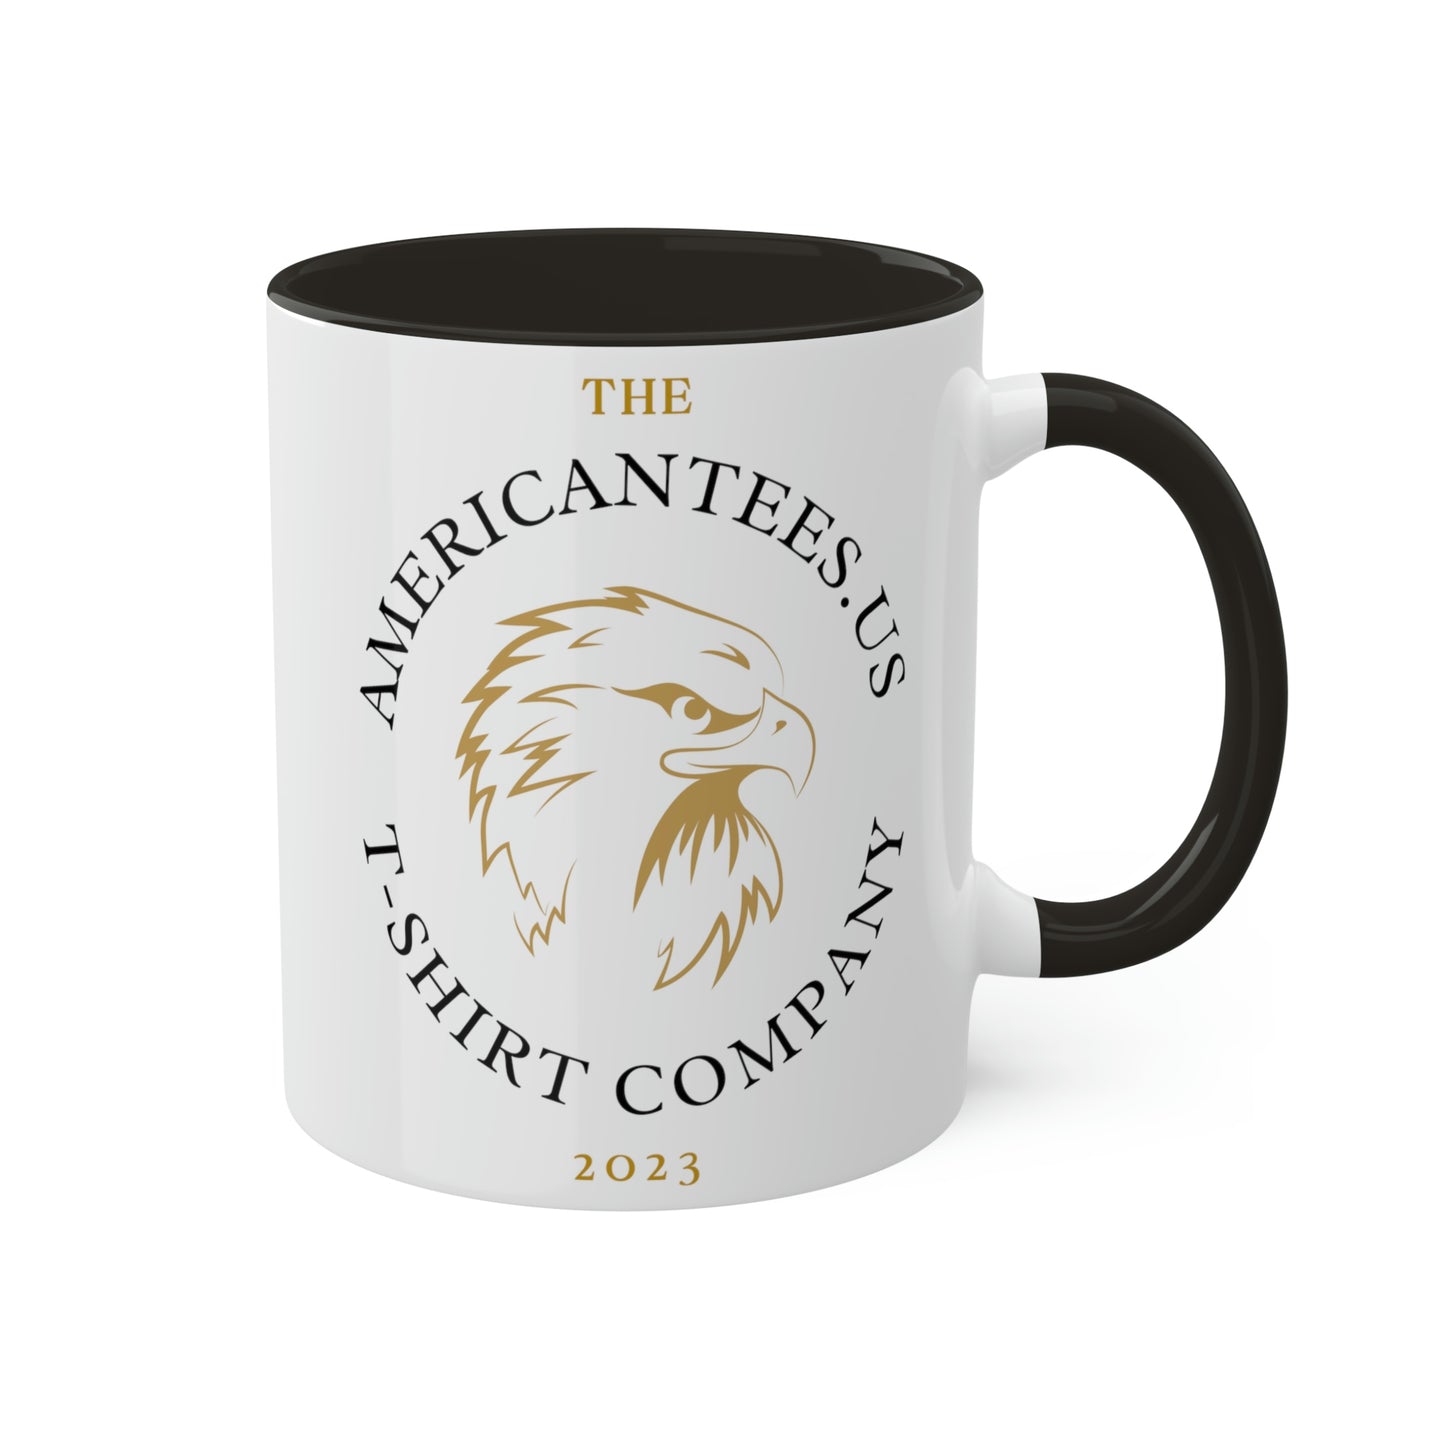 american-tees-us-logo-text-glossy-mug-11-oz-coffee-right-side